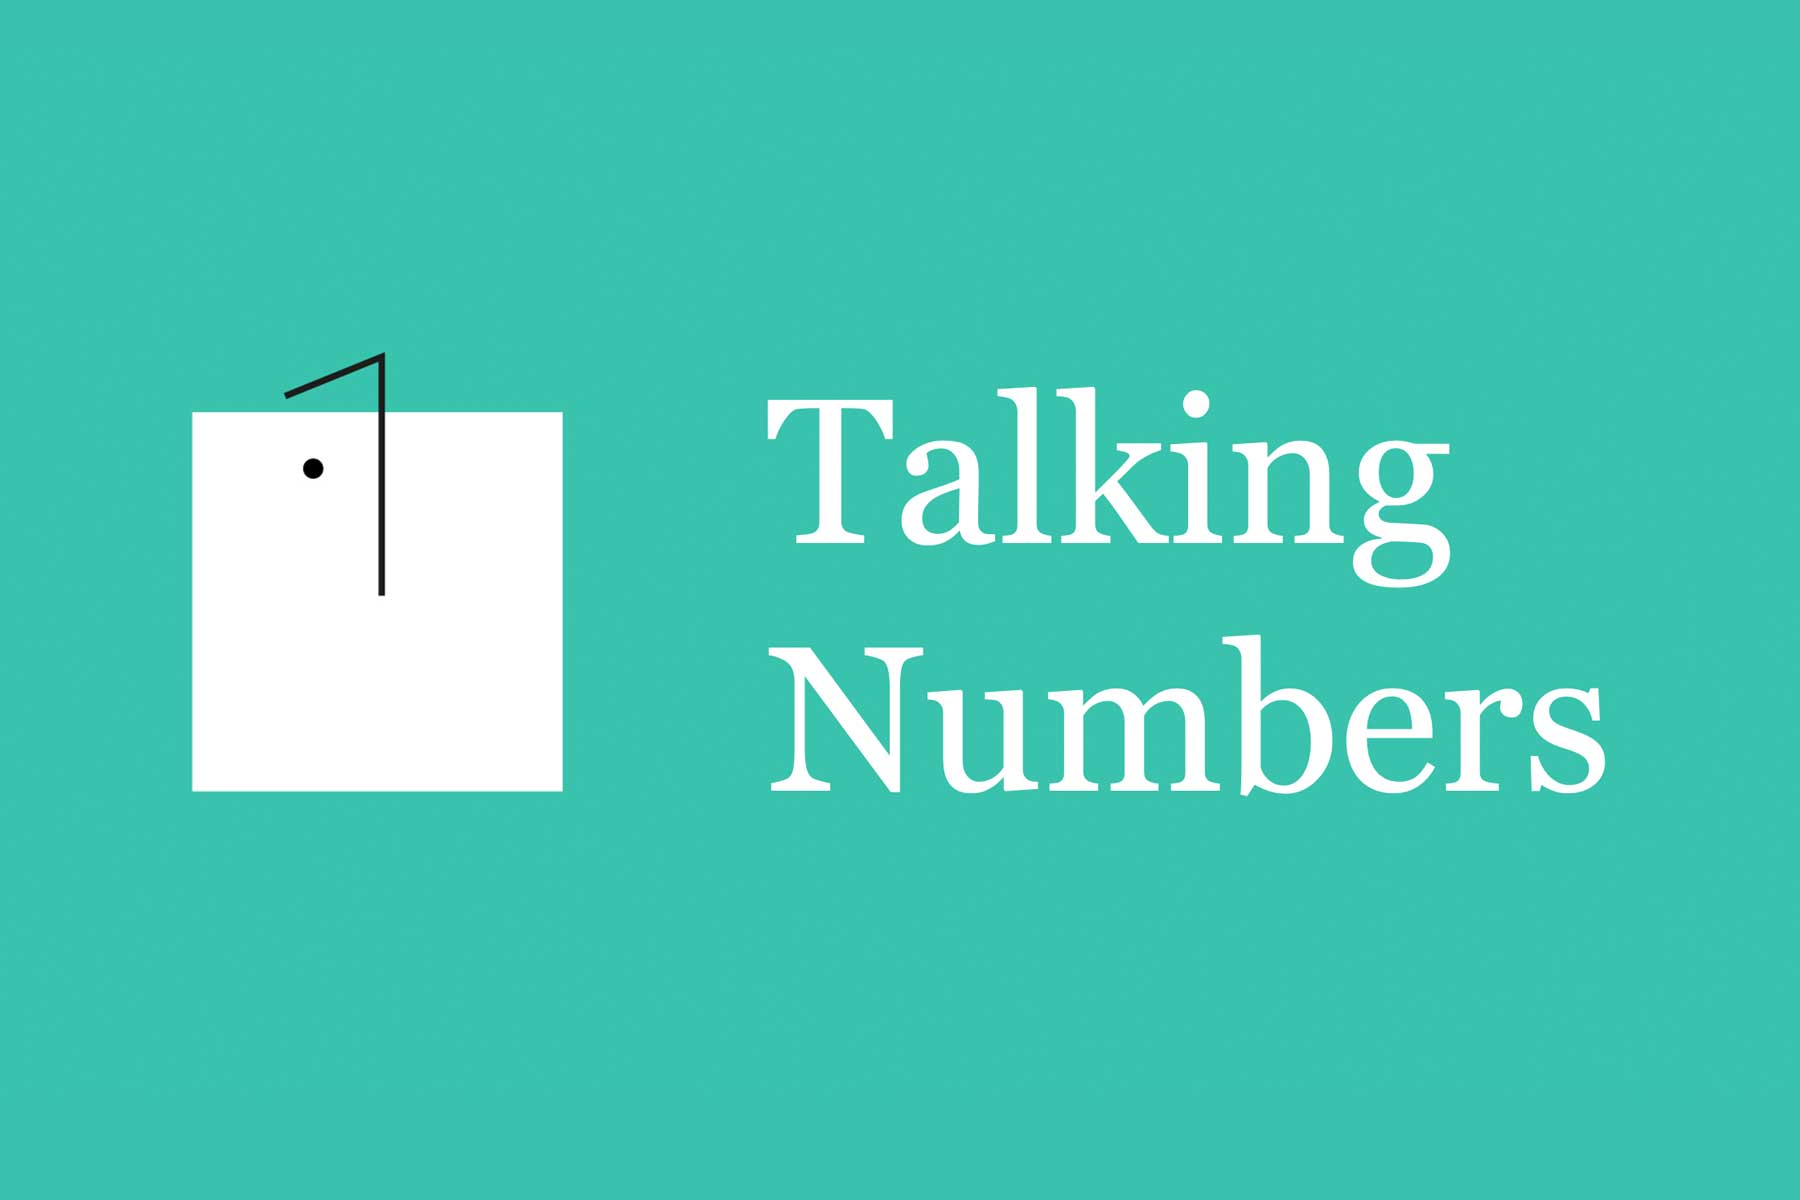 Talking numbers